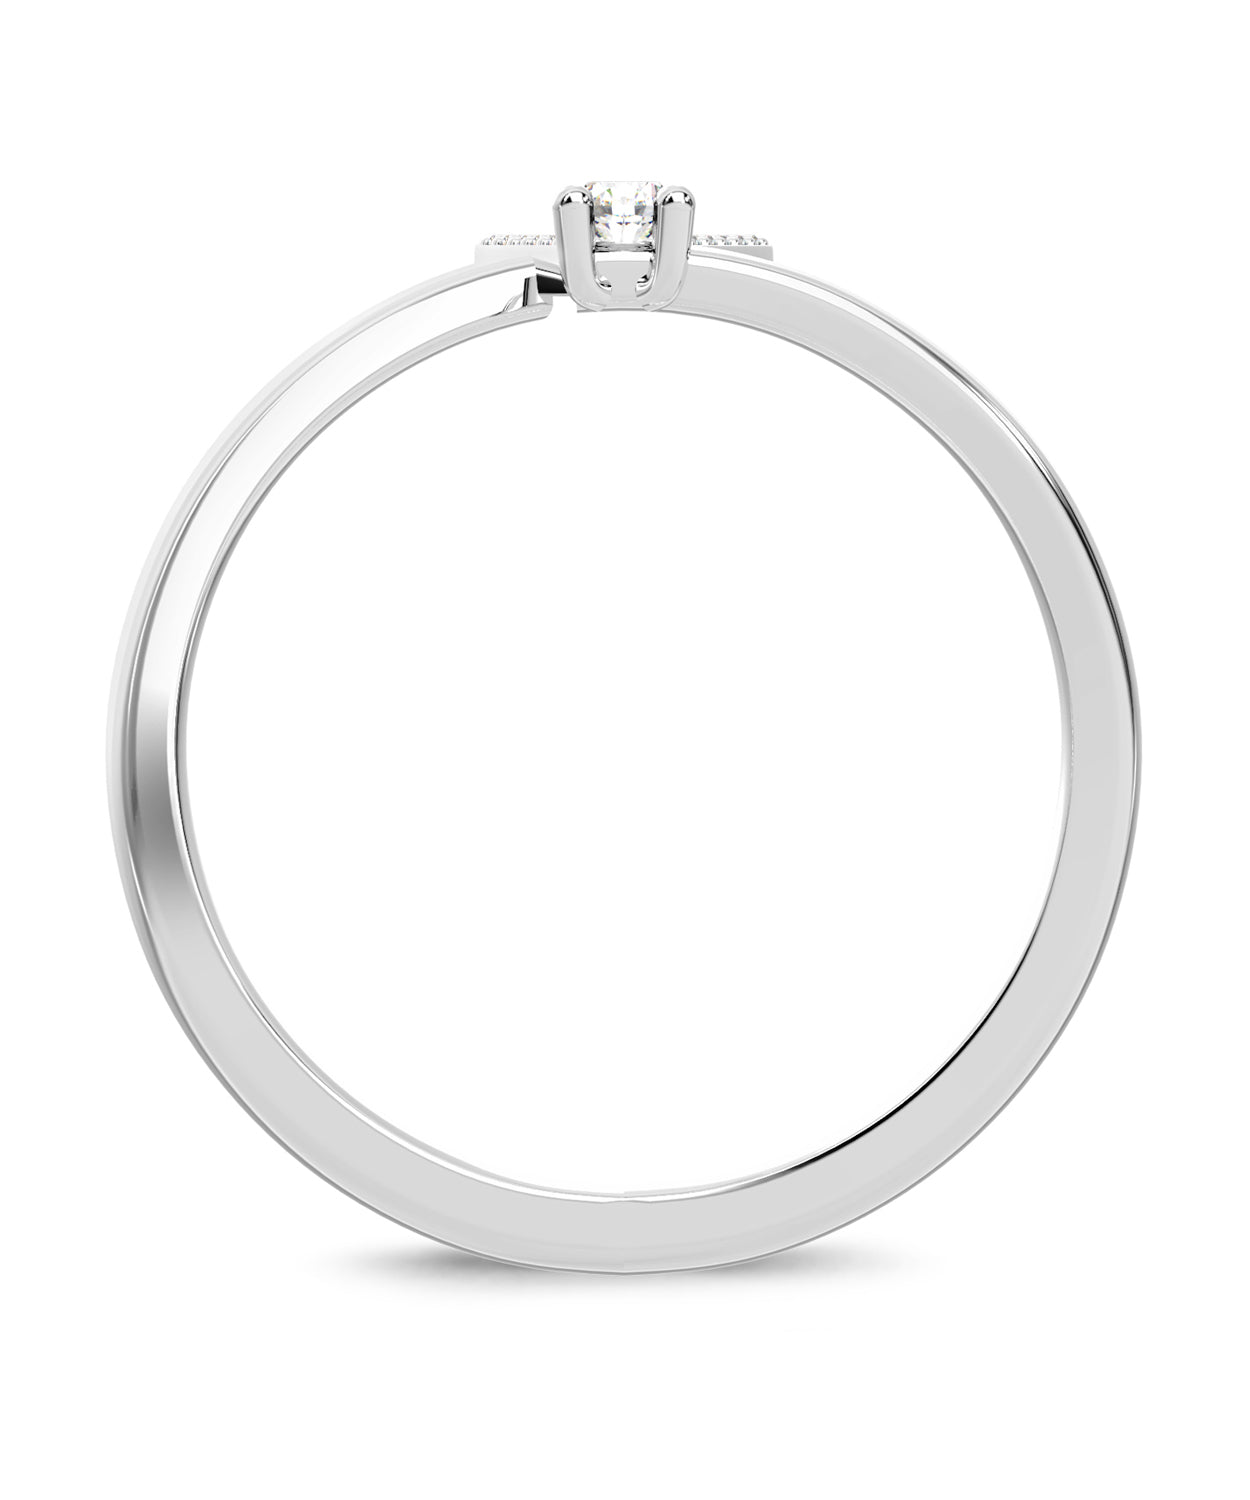 ESEMCO Diamond 18k White Gold Letter V Initial Open Ring View 2